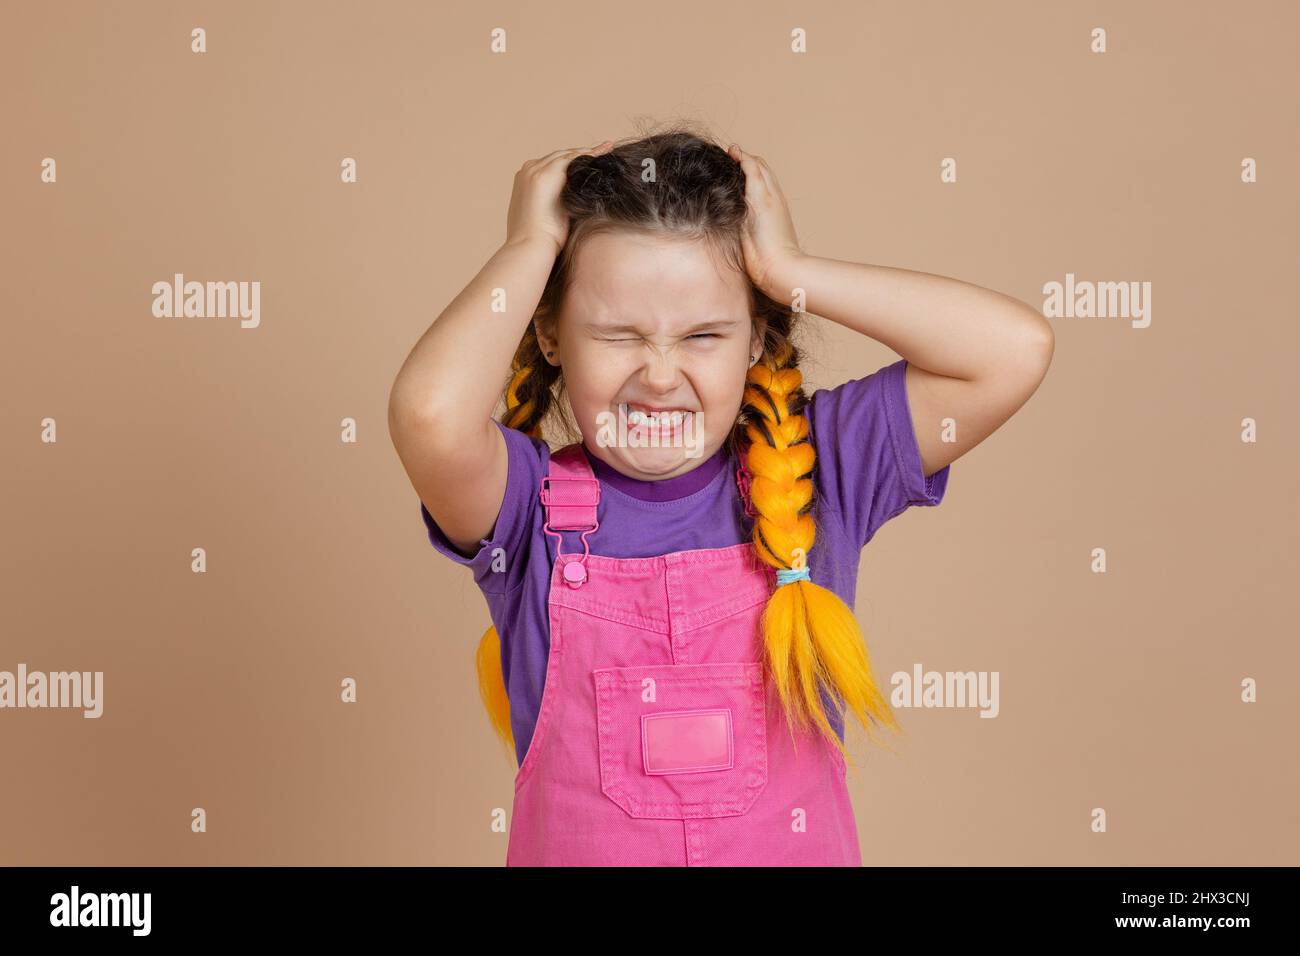 Petite fille irritée ayant des maux de tête touchant la tête avec les mains ayant des tresses de kanekalon jaune grinning portant la combinaison rose et le t-shirt violet sur Banque D'Images